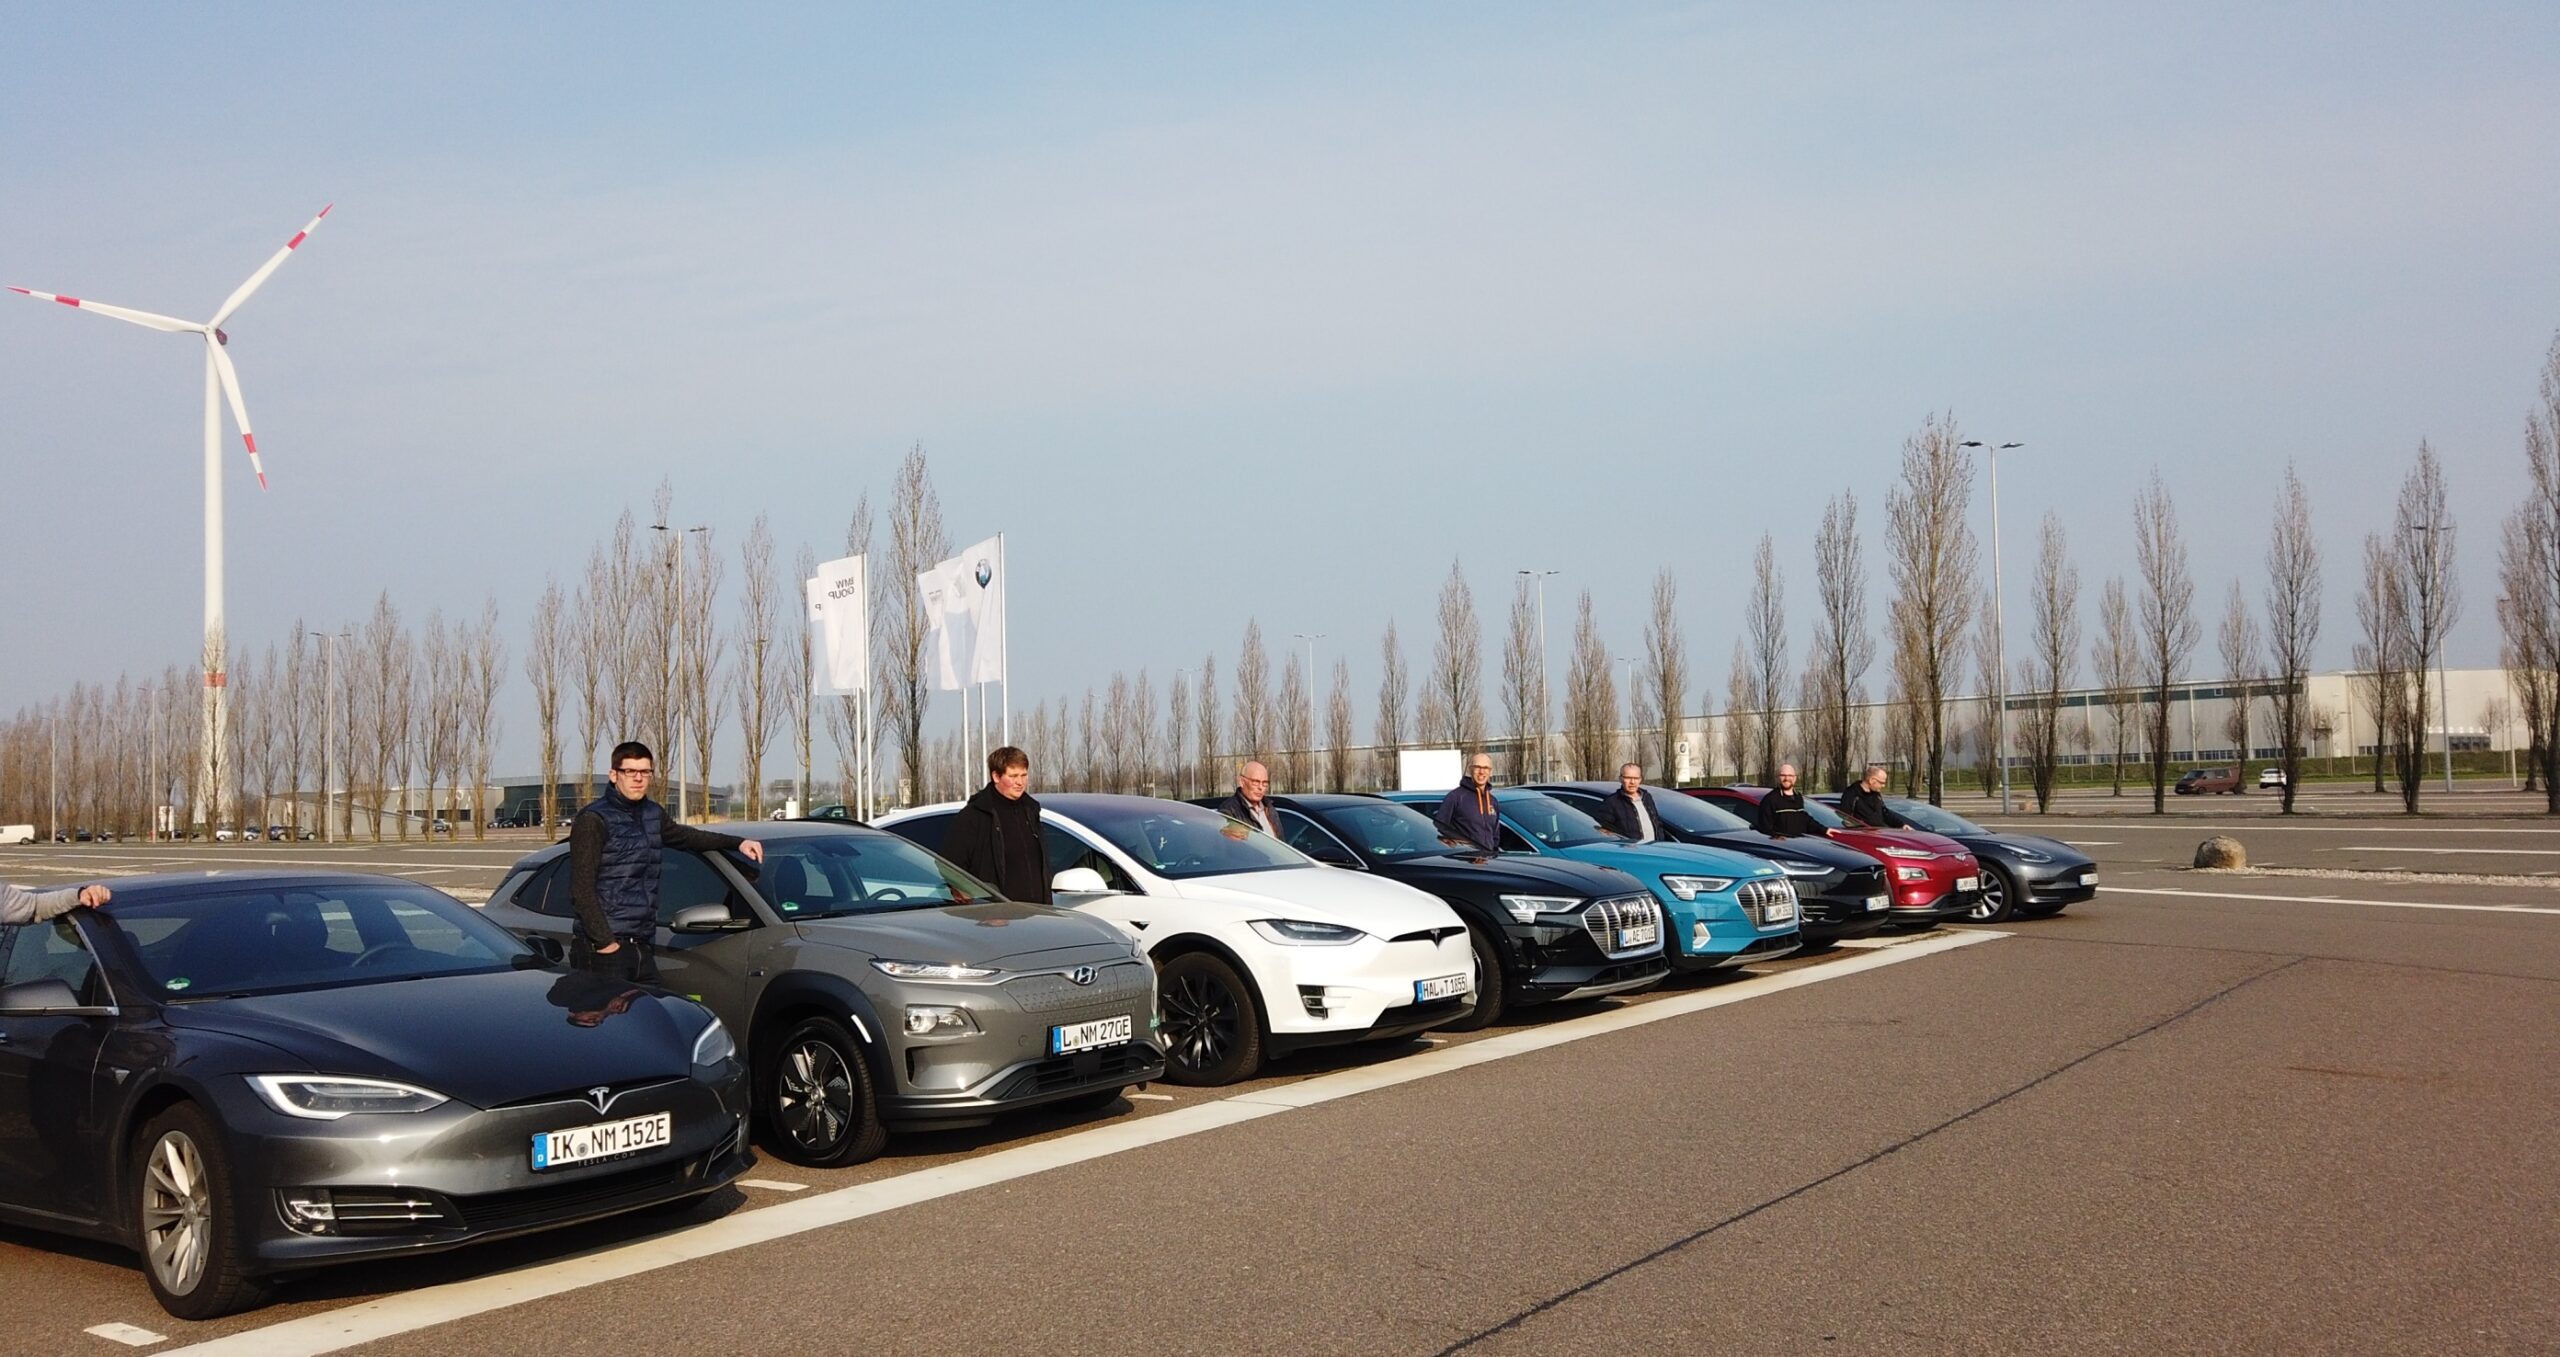 nextmove-Flotte mit Fahrern vor E-Auto-Vergleichsfahrt auf Autobahn